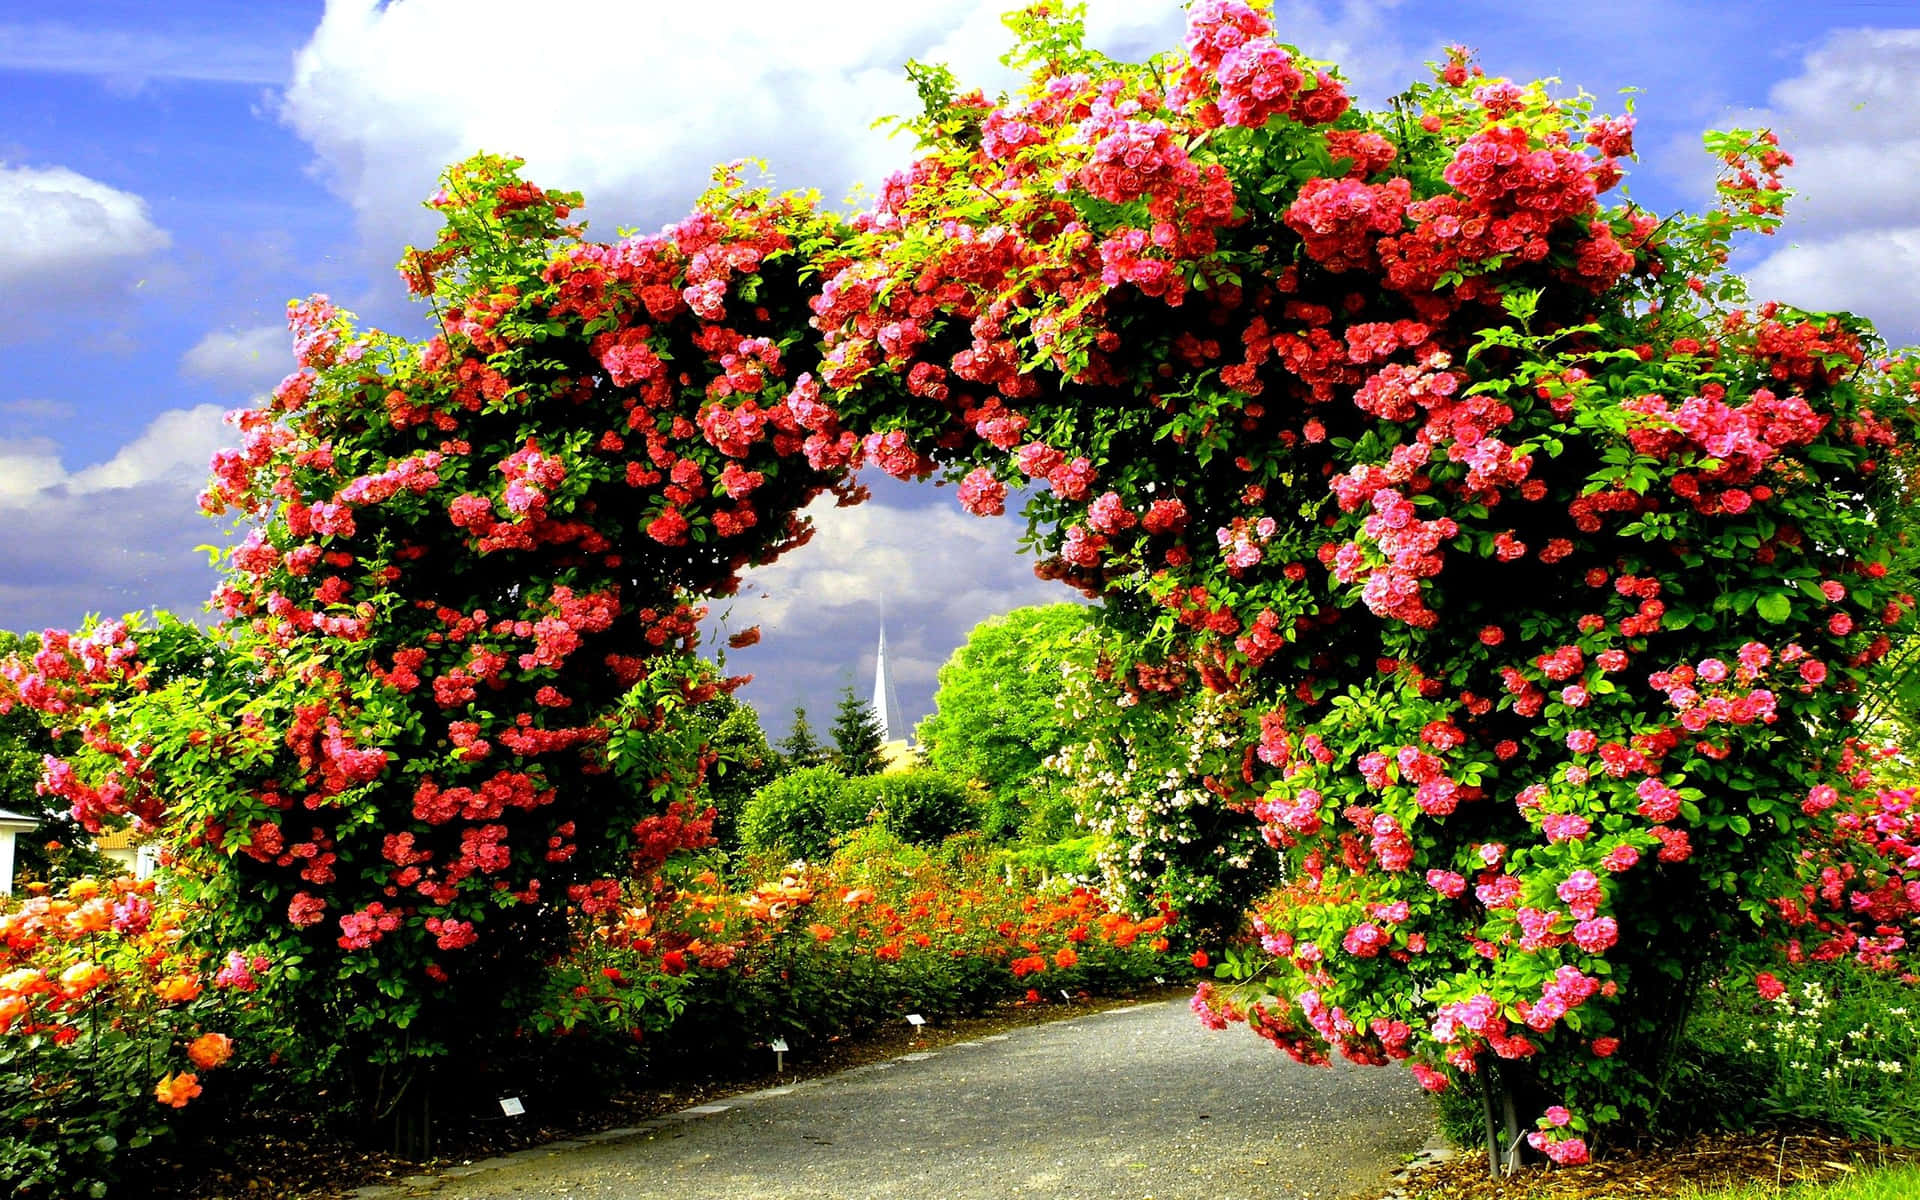 Smukke rosenhave lysepinkbilleder på en smuk bue i haven